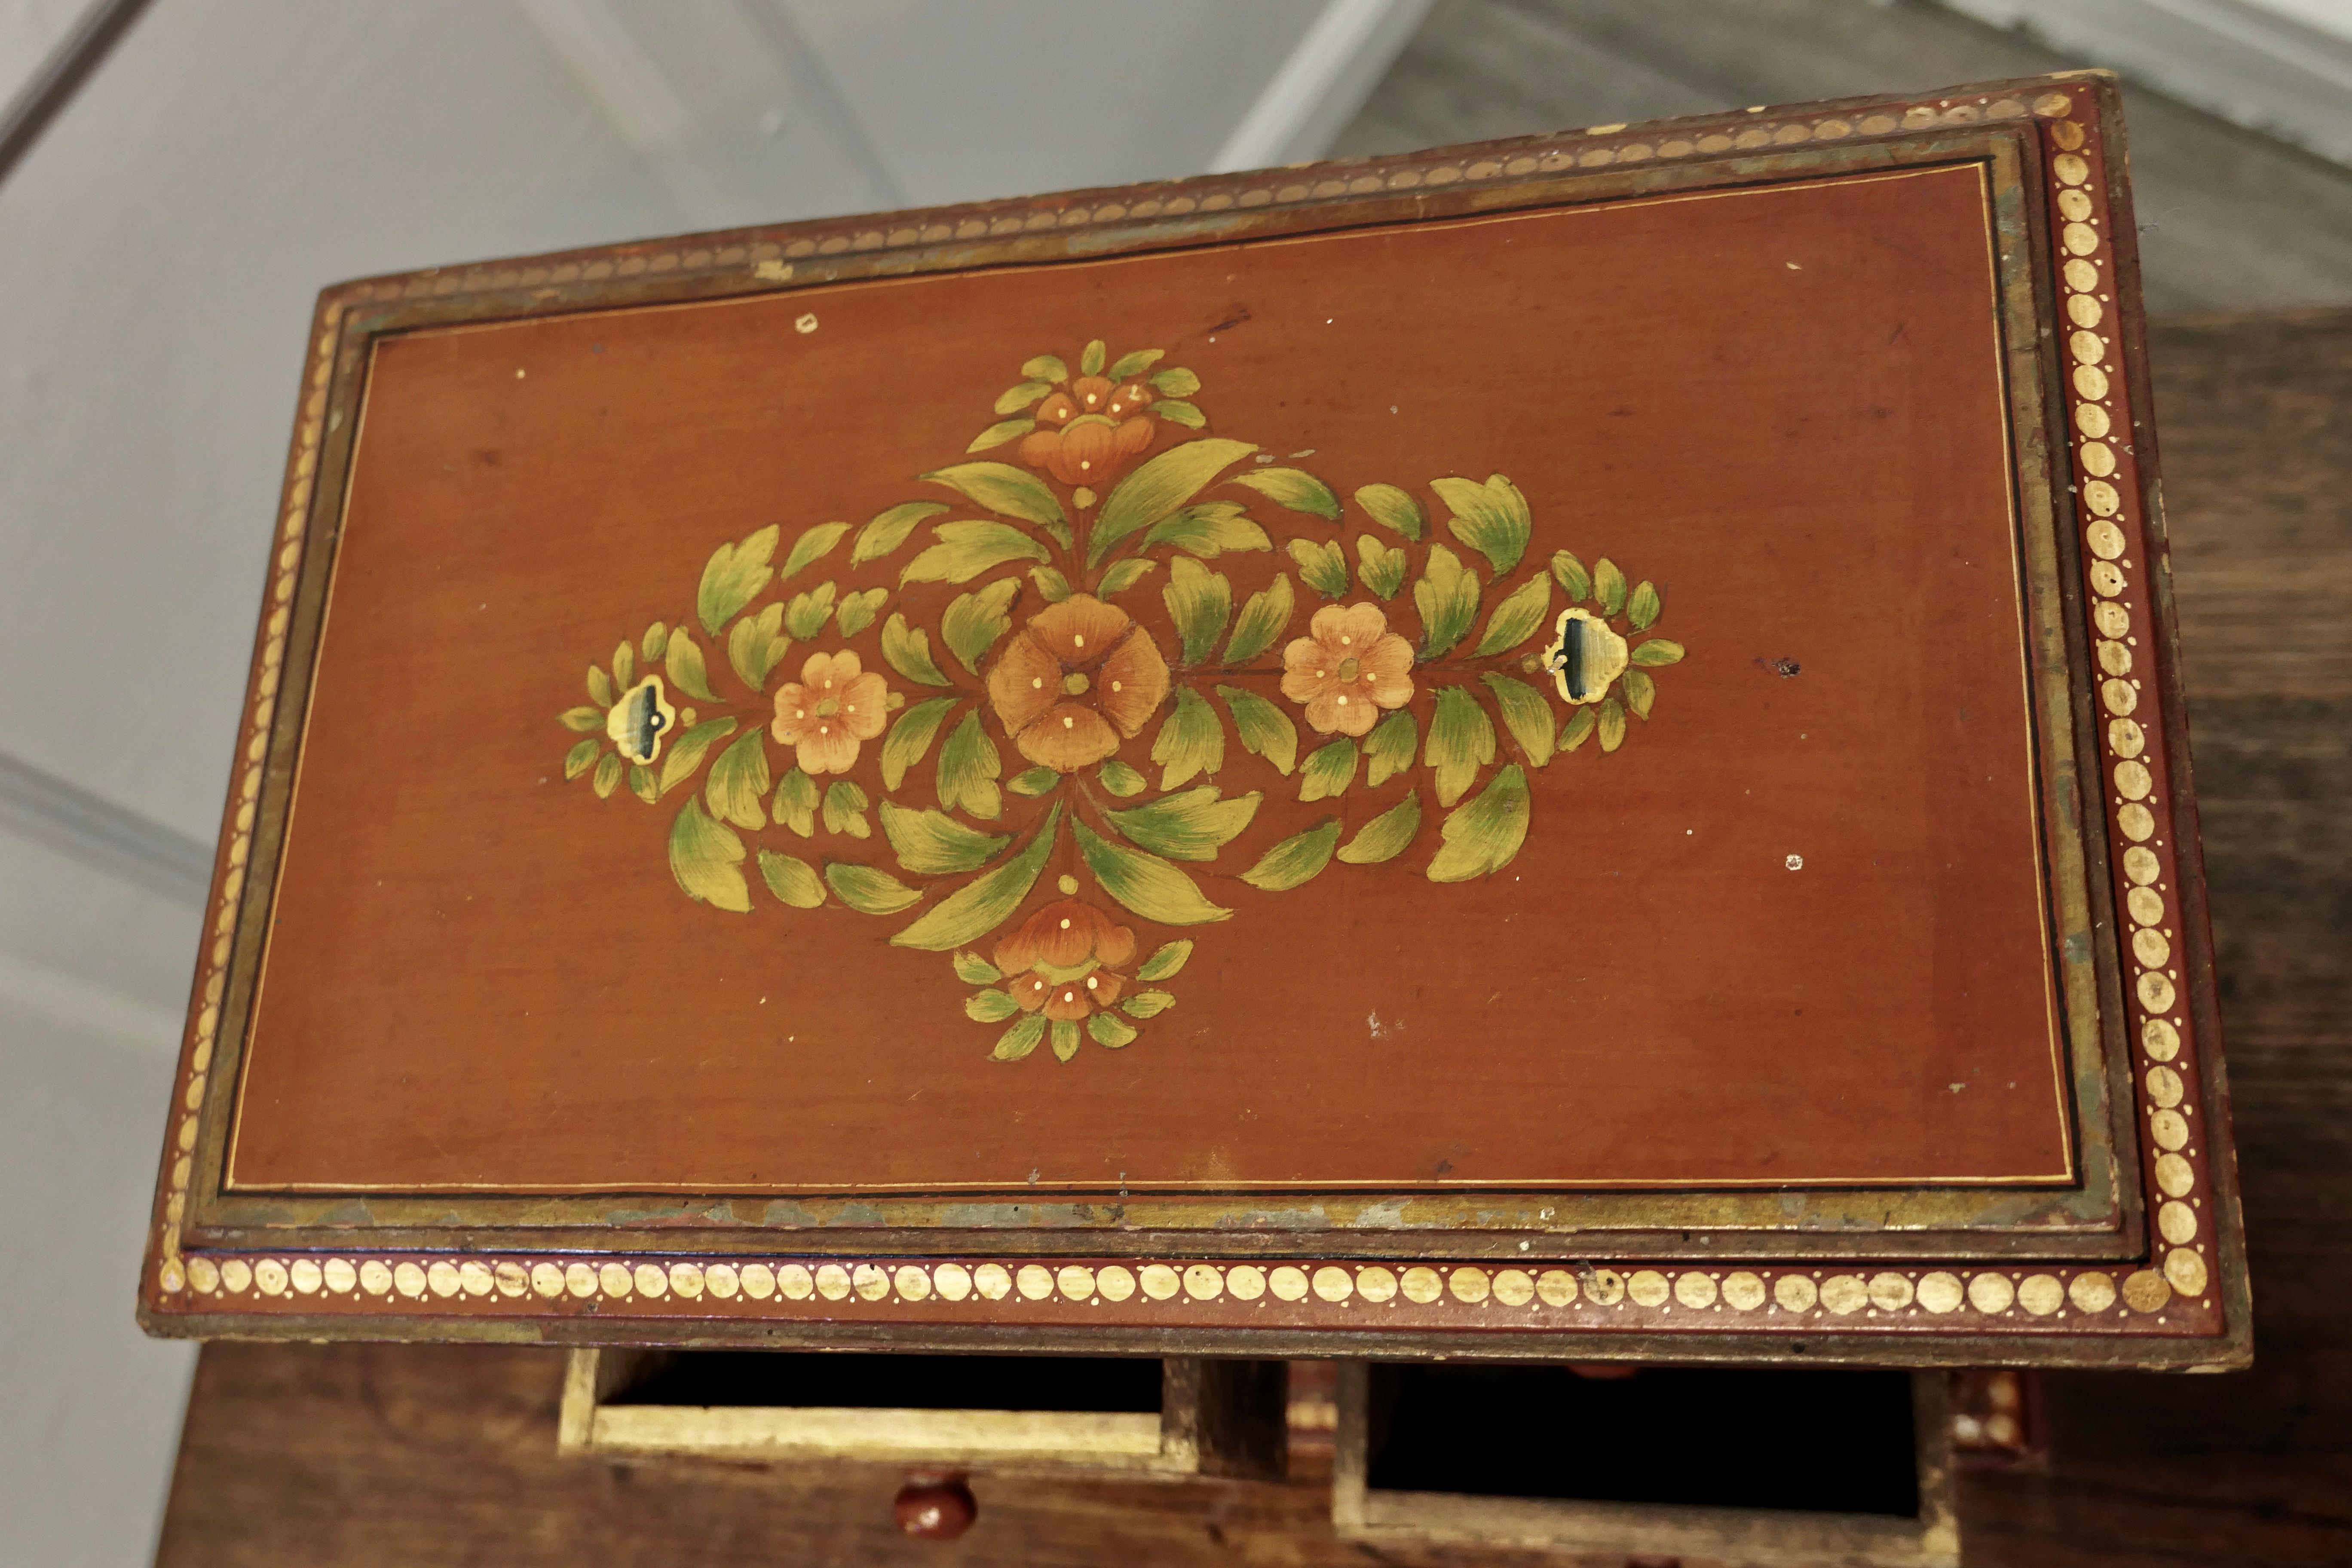 Original Folk Art bemalte Kommode aus dem 19. Jahrhundert.

Eine sehr schöne bemalte Kommode aus Kiefernholz, die oben und an den Seiten mit Blumen verziert ist. Die Schubladenfronten und die Leisten sind ebenfalls verziert. 
Dies ist eine sehr